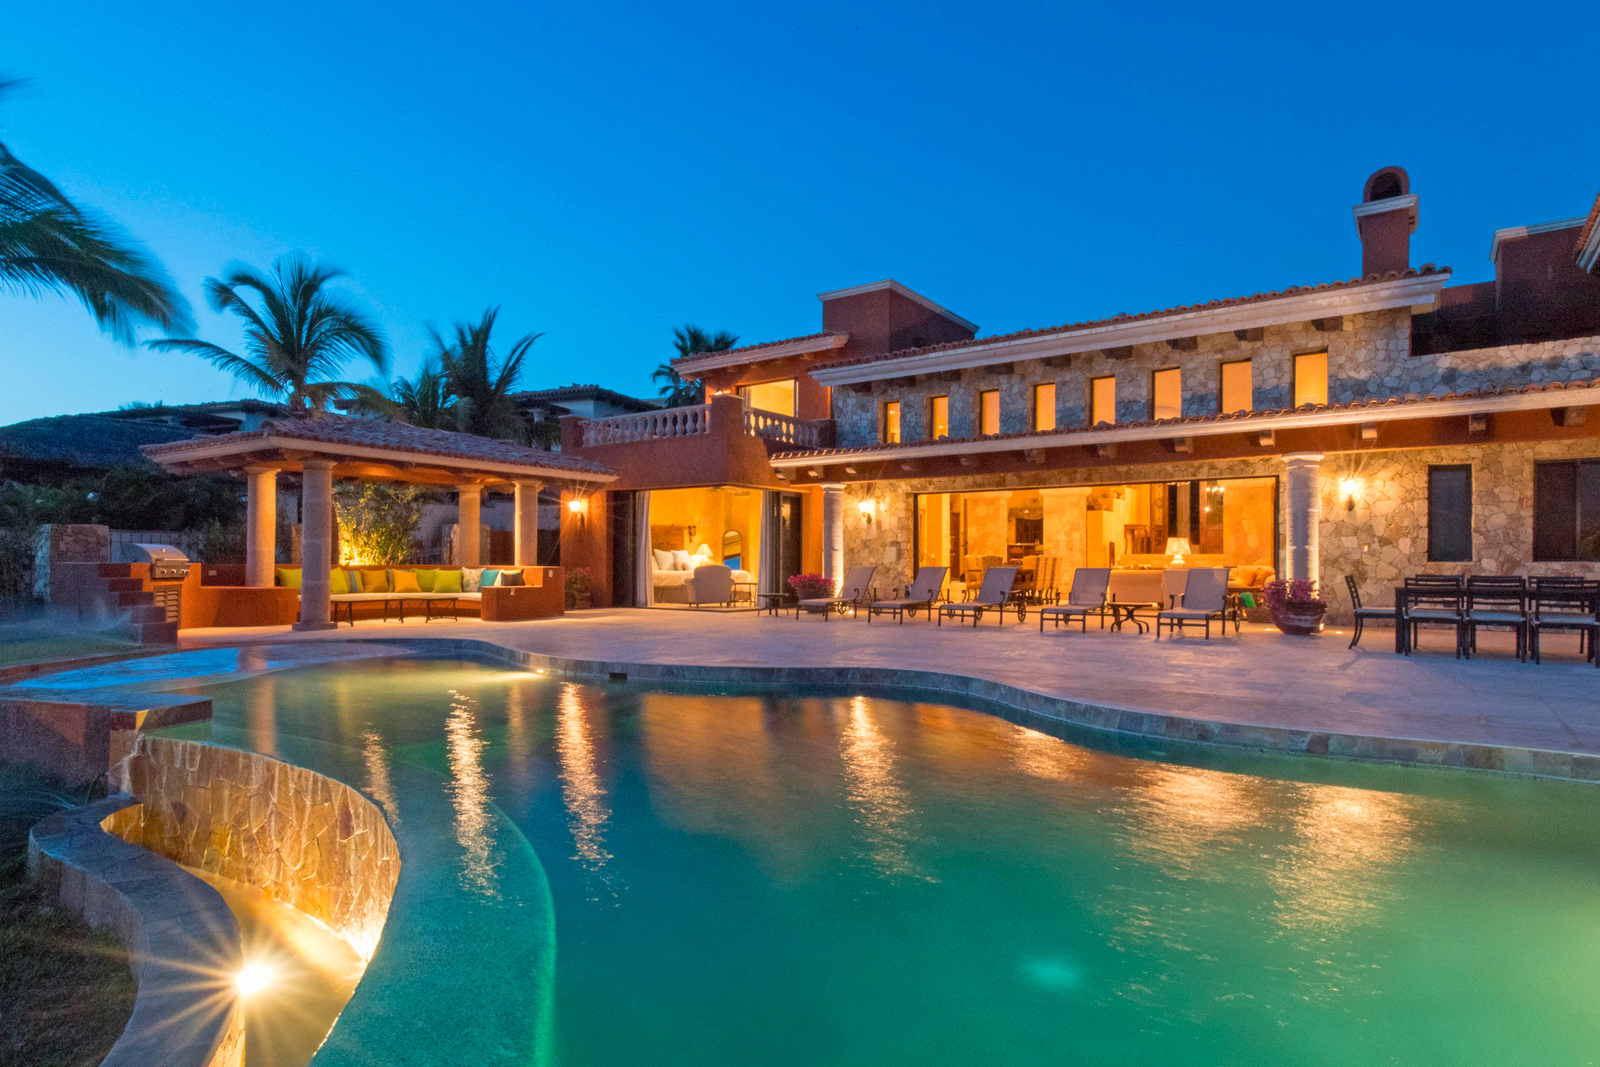 Luxury vacation rental in Los Cabos Mexico at Villa Cortez overlooking the Cabo del Sol Golf Course and Sea of Cortez